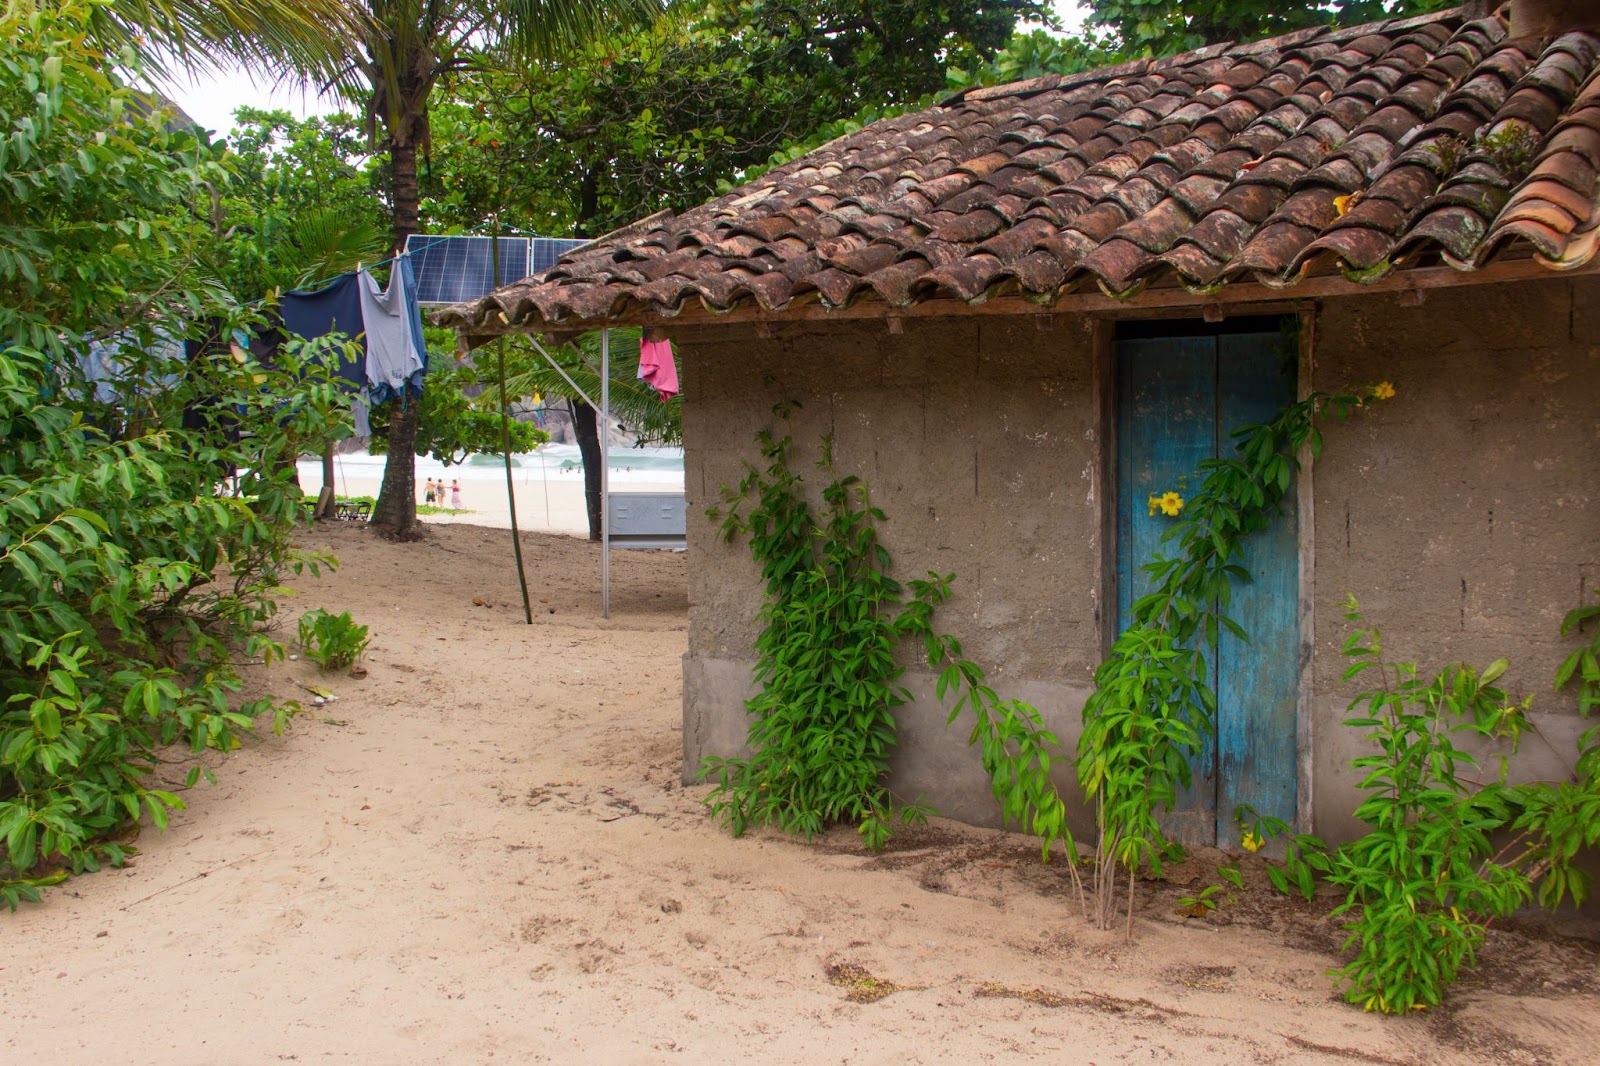 Pequena casa rústica feita de madeira e cimento, estrutura de moradia comum nas comunidades tradicionais caiçaras. A construção está em um terreno de areia cercado por vegetação verde.